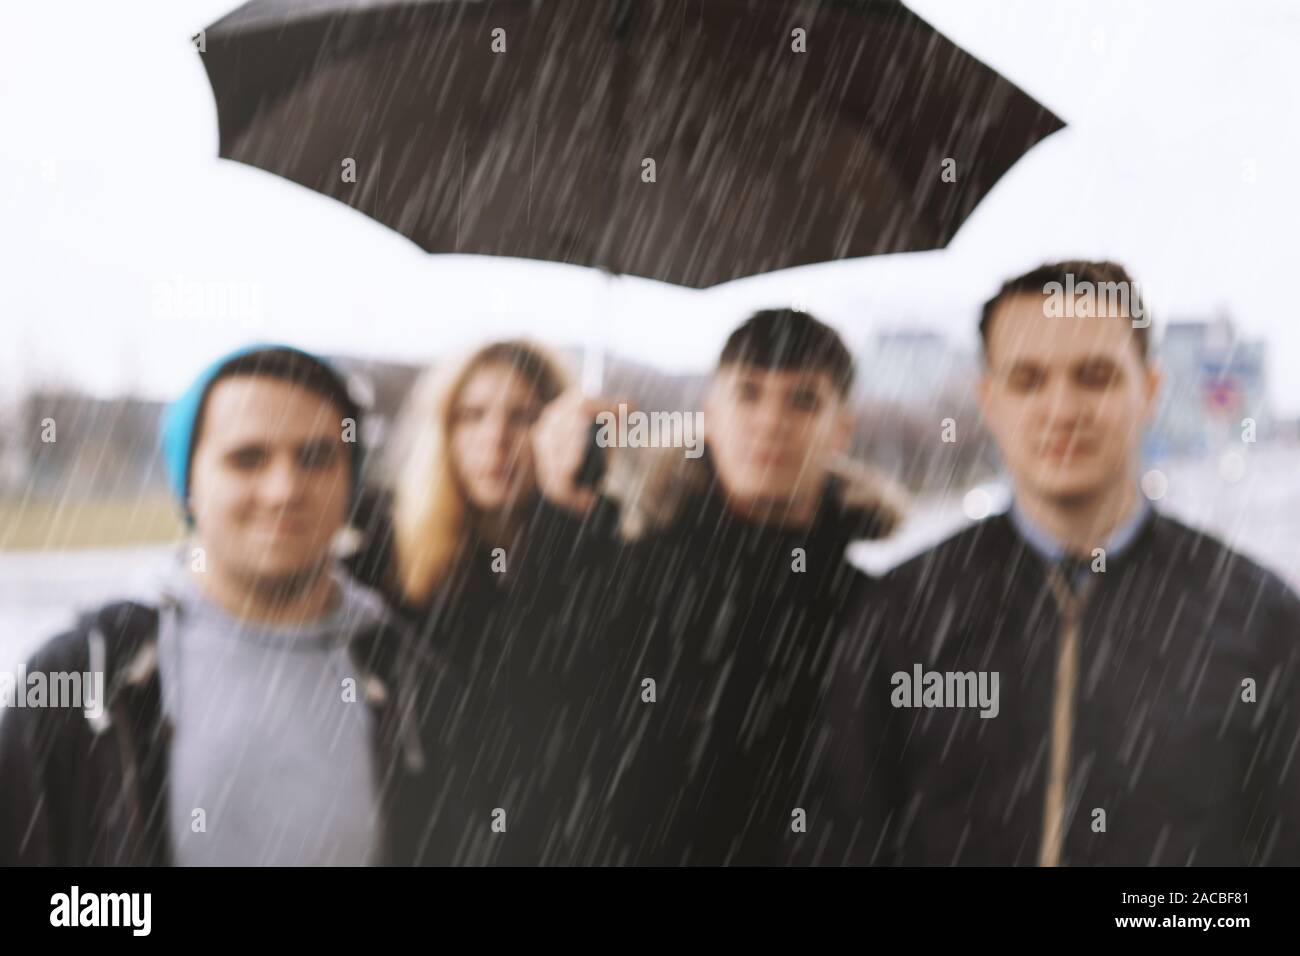 Defokussierten Gruppe von jungen städtischen Jugendlichen Freunde unter einem Dach in Heavy Rain - verschwommenen Hintergrund Bild mit Kopie Raum - schlechtes Wetter Konzept Stockfoto